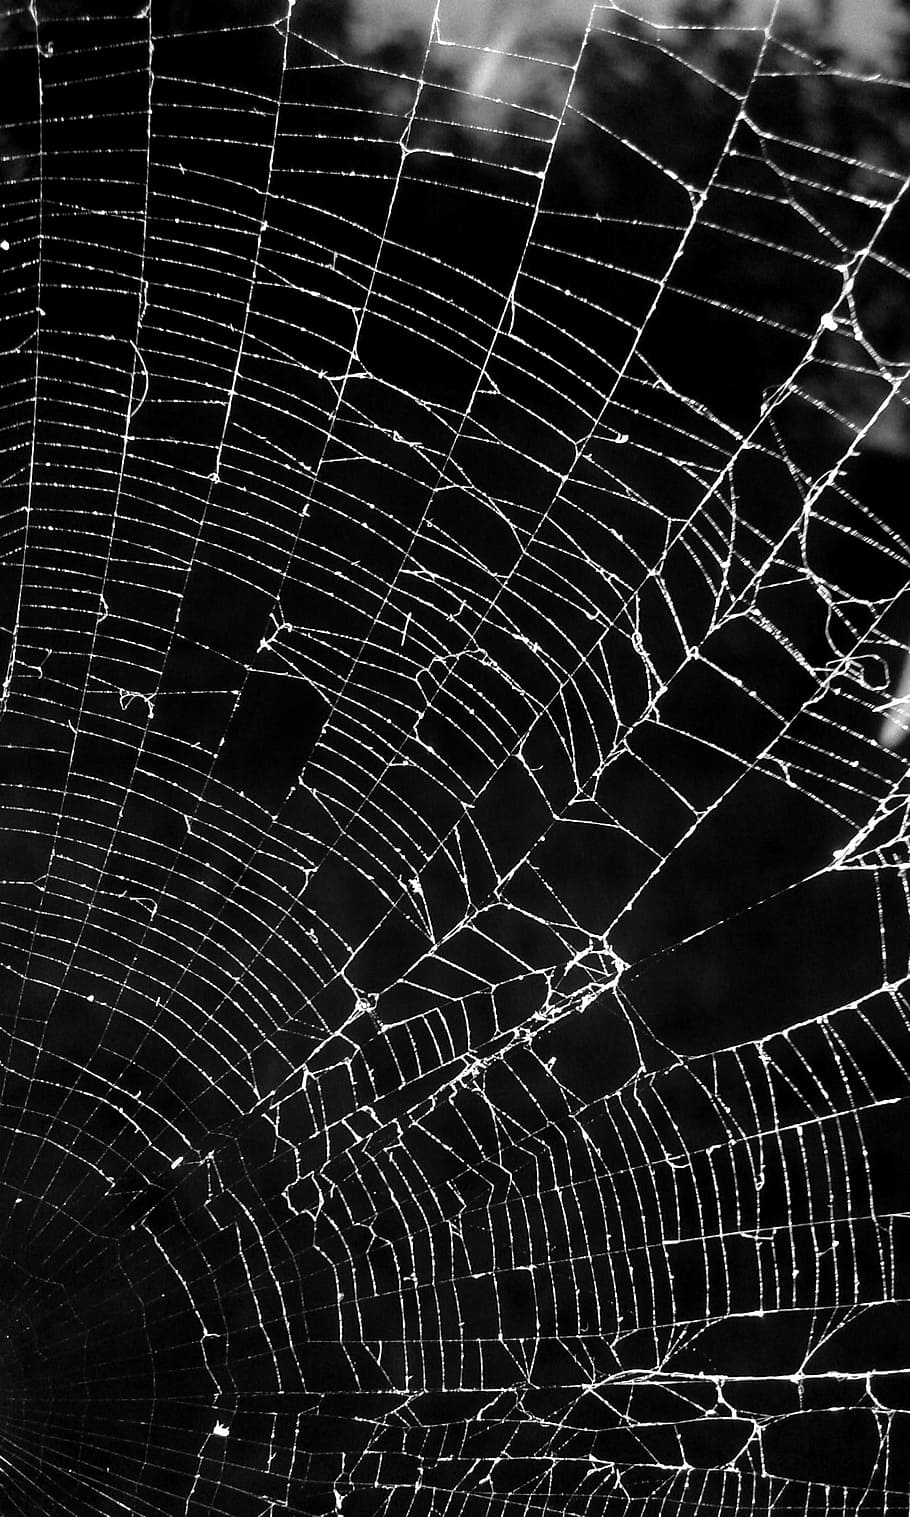 hitam dan putih, gelap, potret, labah-labah, jaring laba-laba, alam, kerapuhan, latar belakang, web, tidak ada orang